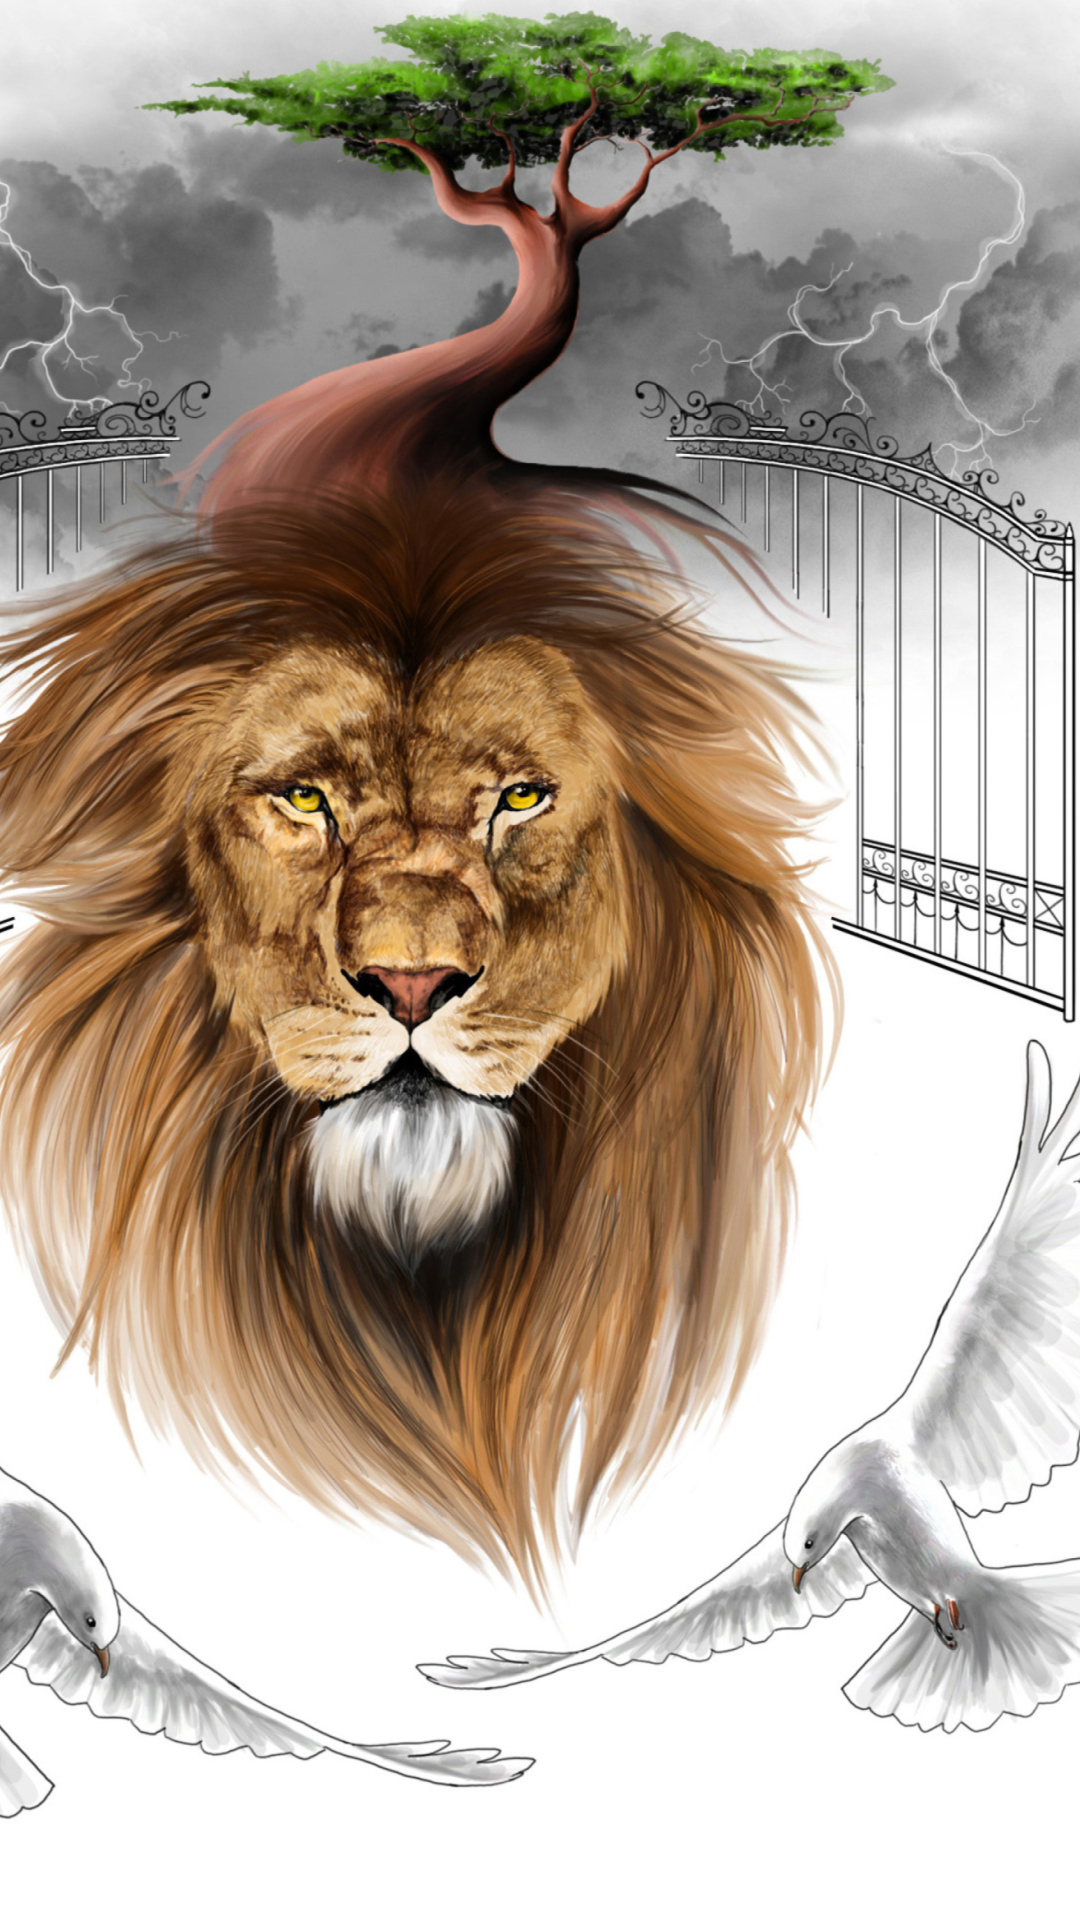 Обои Lion Painting 1080x1920